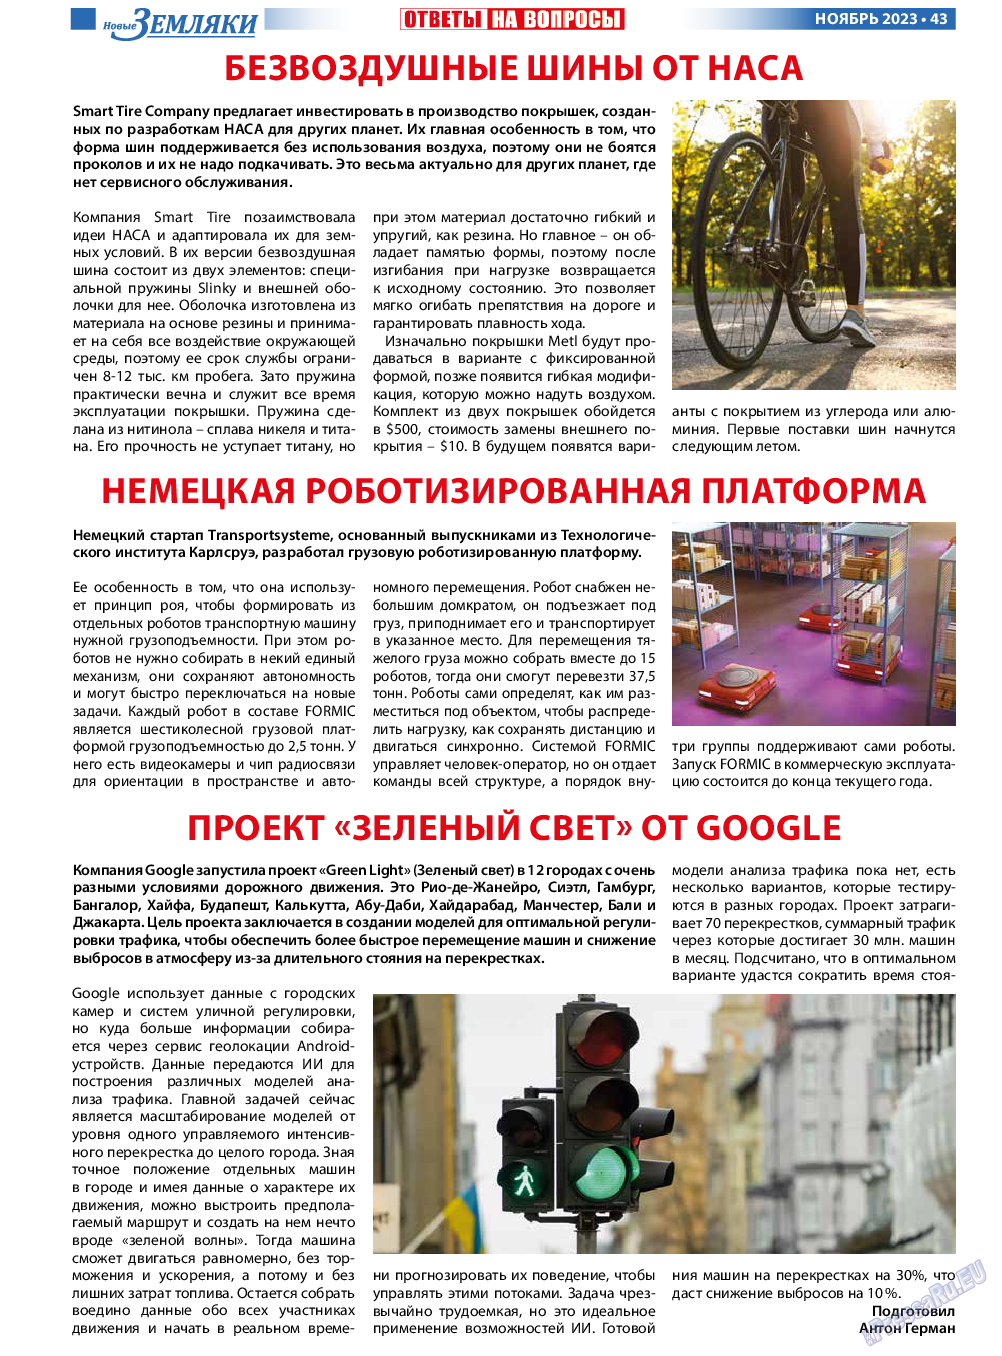 Новые Земляки, газета. 2023 №11 стр.43